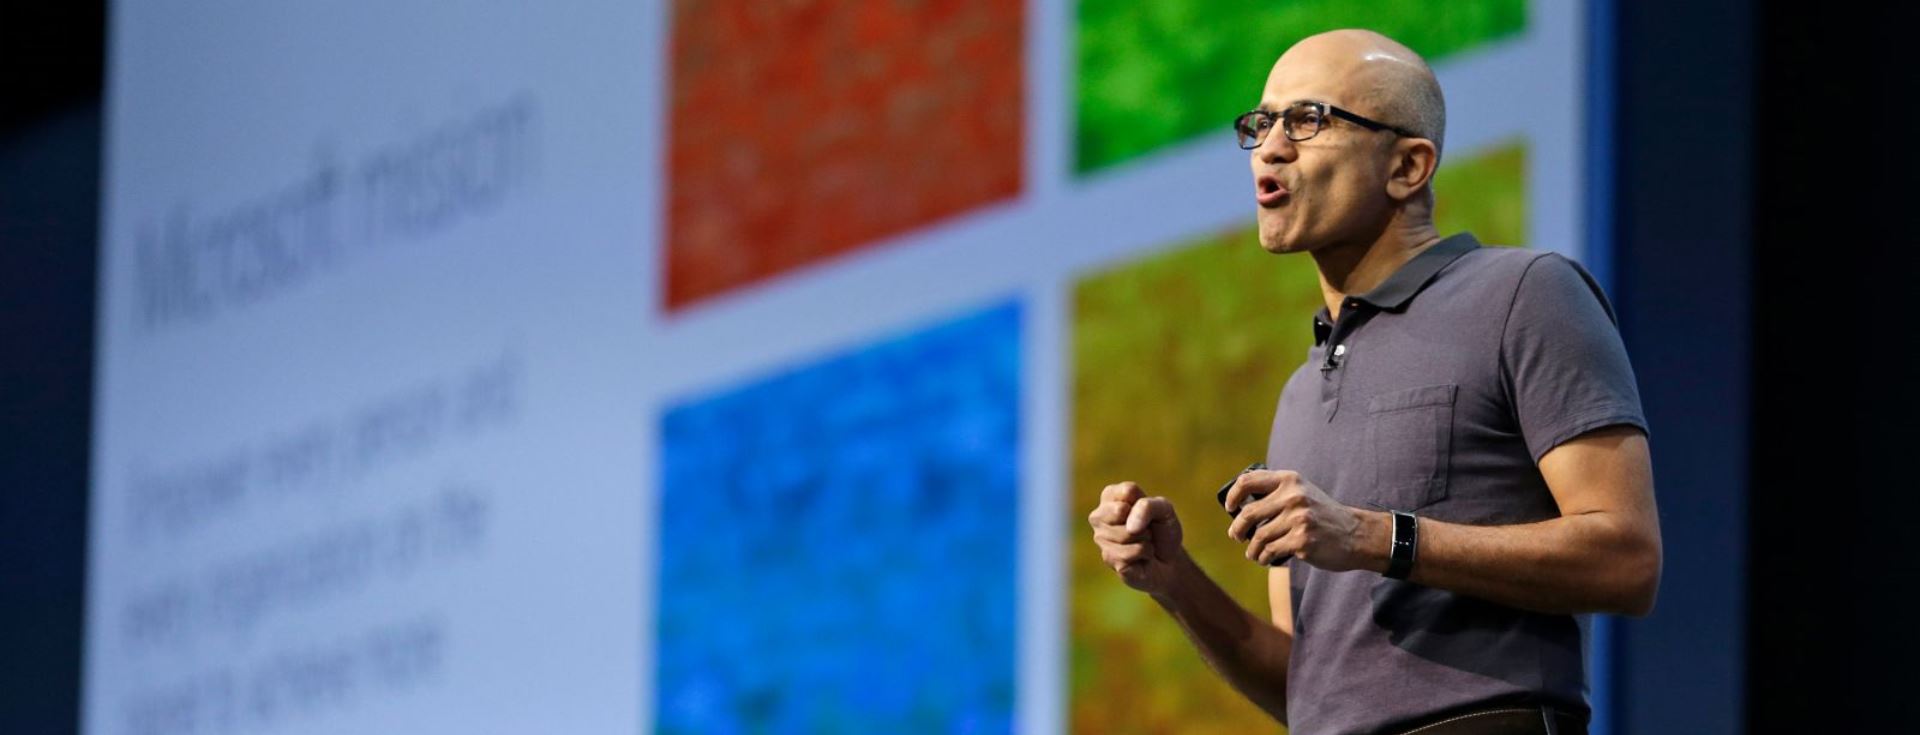 Microsoft CEO'sundan Eşşiz Bir Başarı için 3 Tavsiye